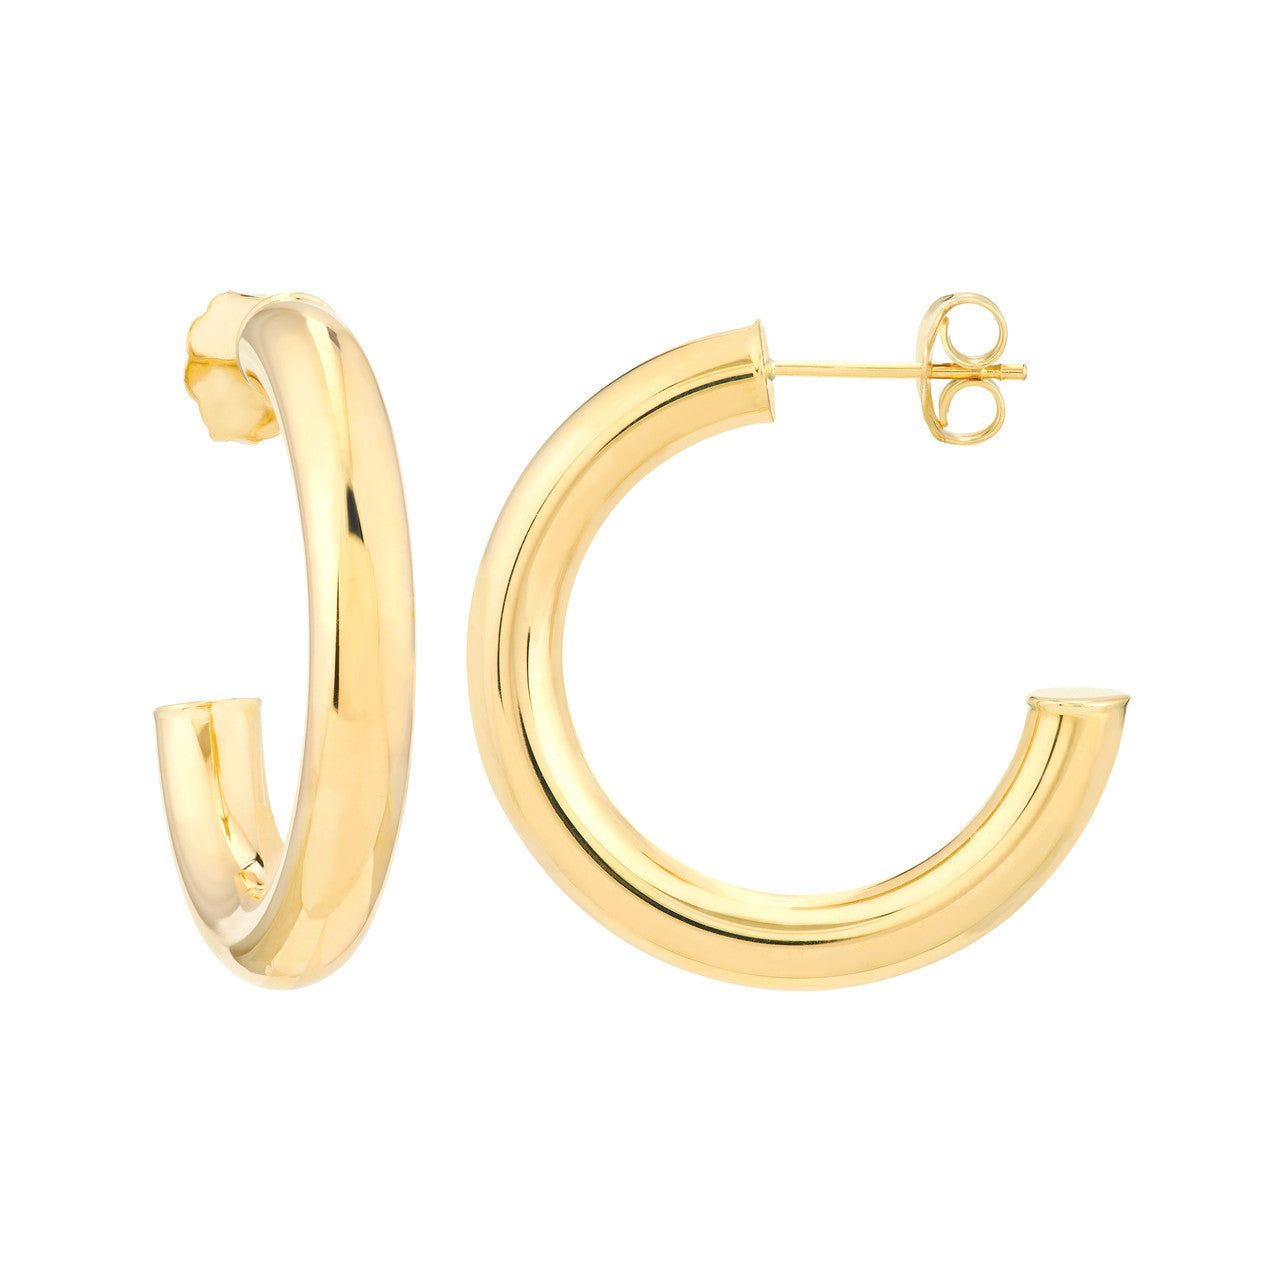 14kt Gold 4mm x 25mm Tube Hoop Earrings